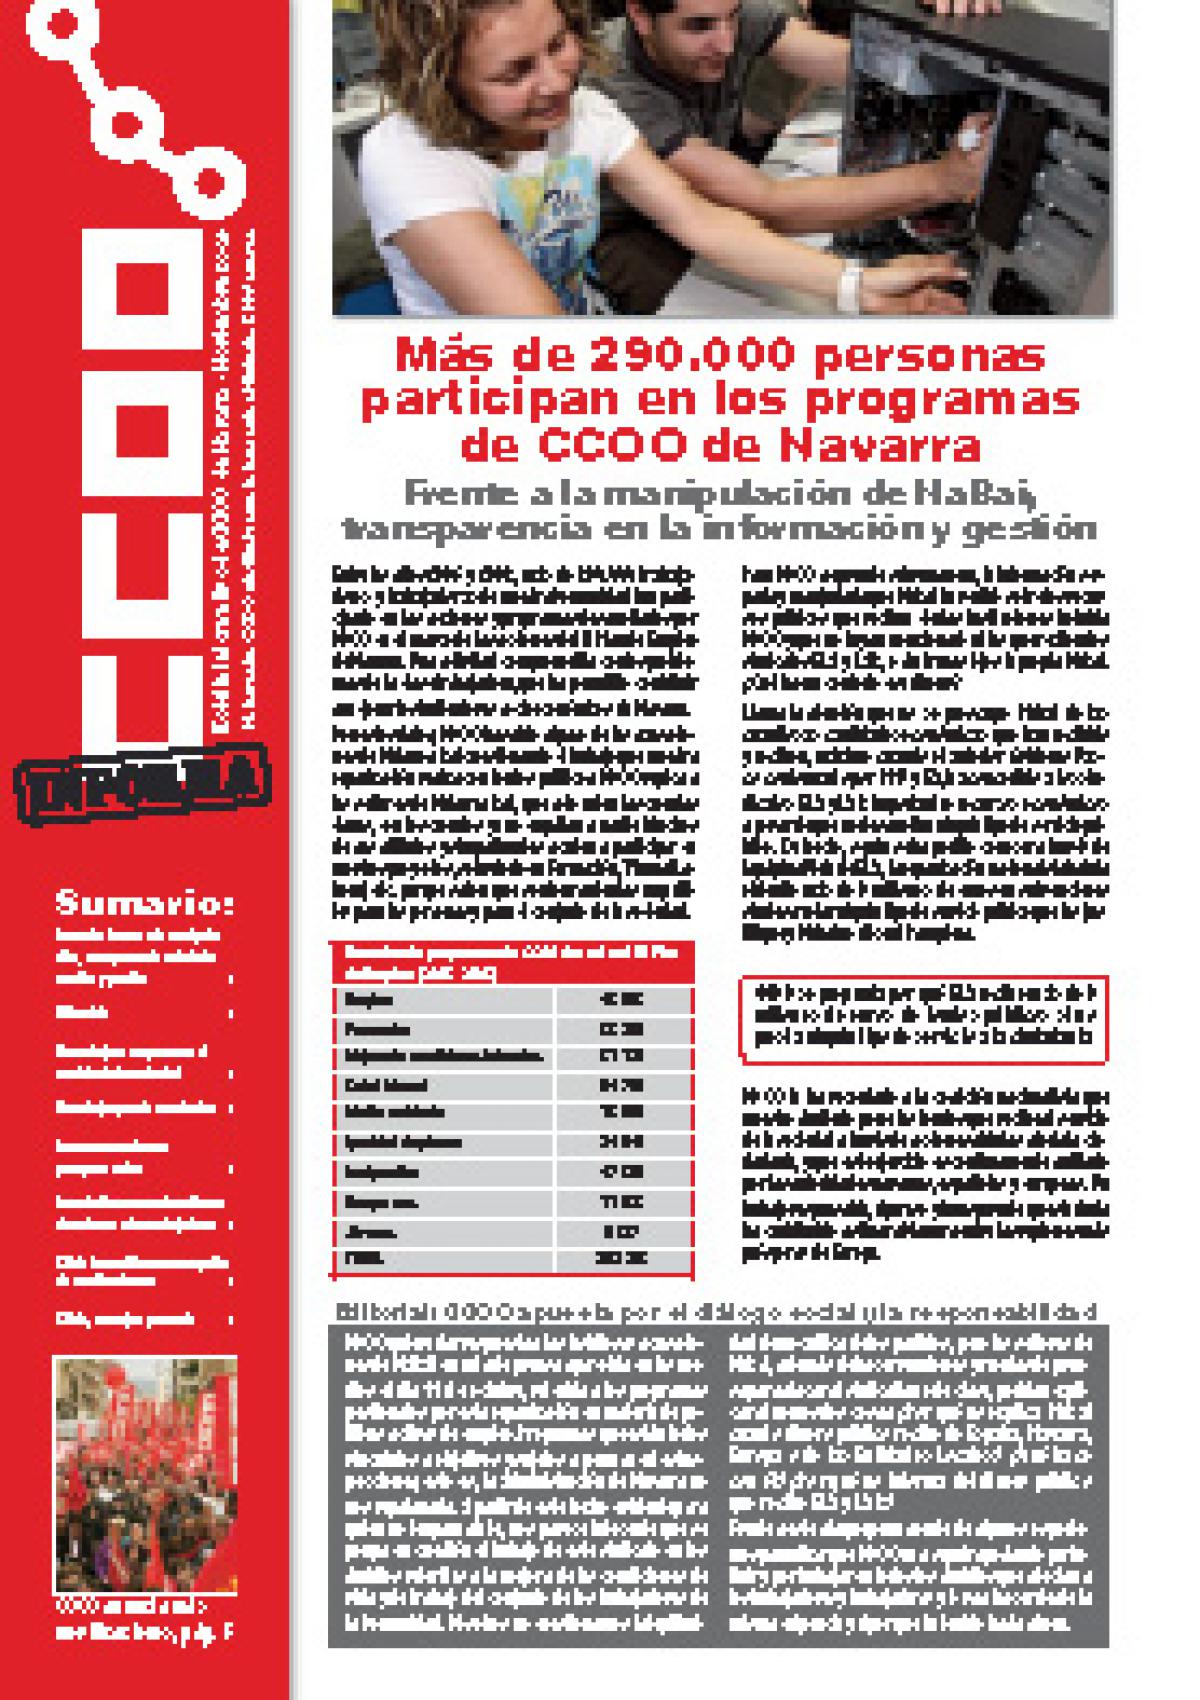 Ms de 290.000 personas participan en los programas de CCOO de Navarra